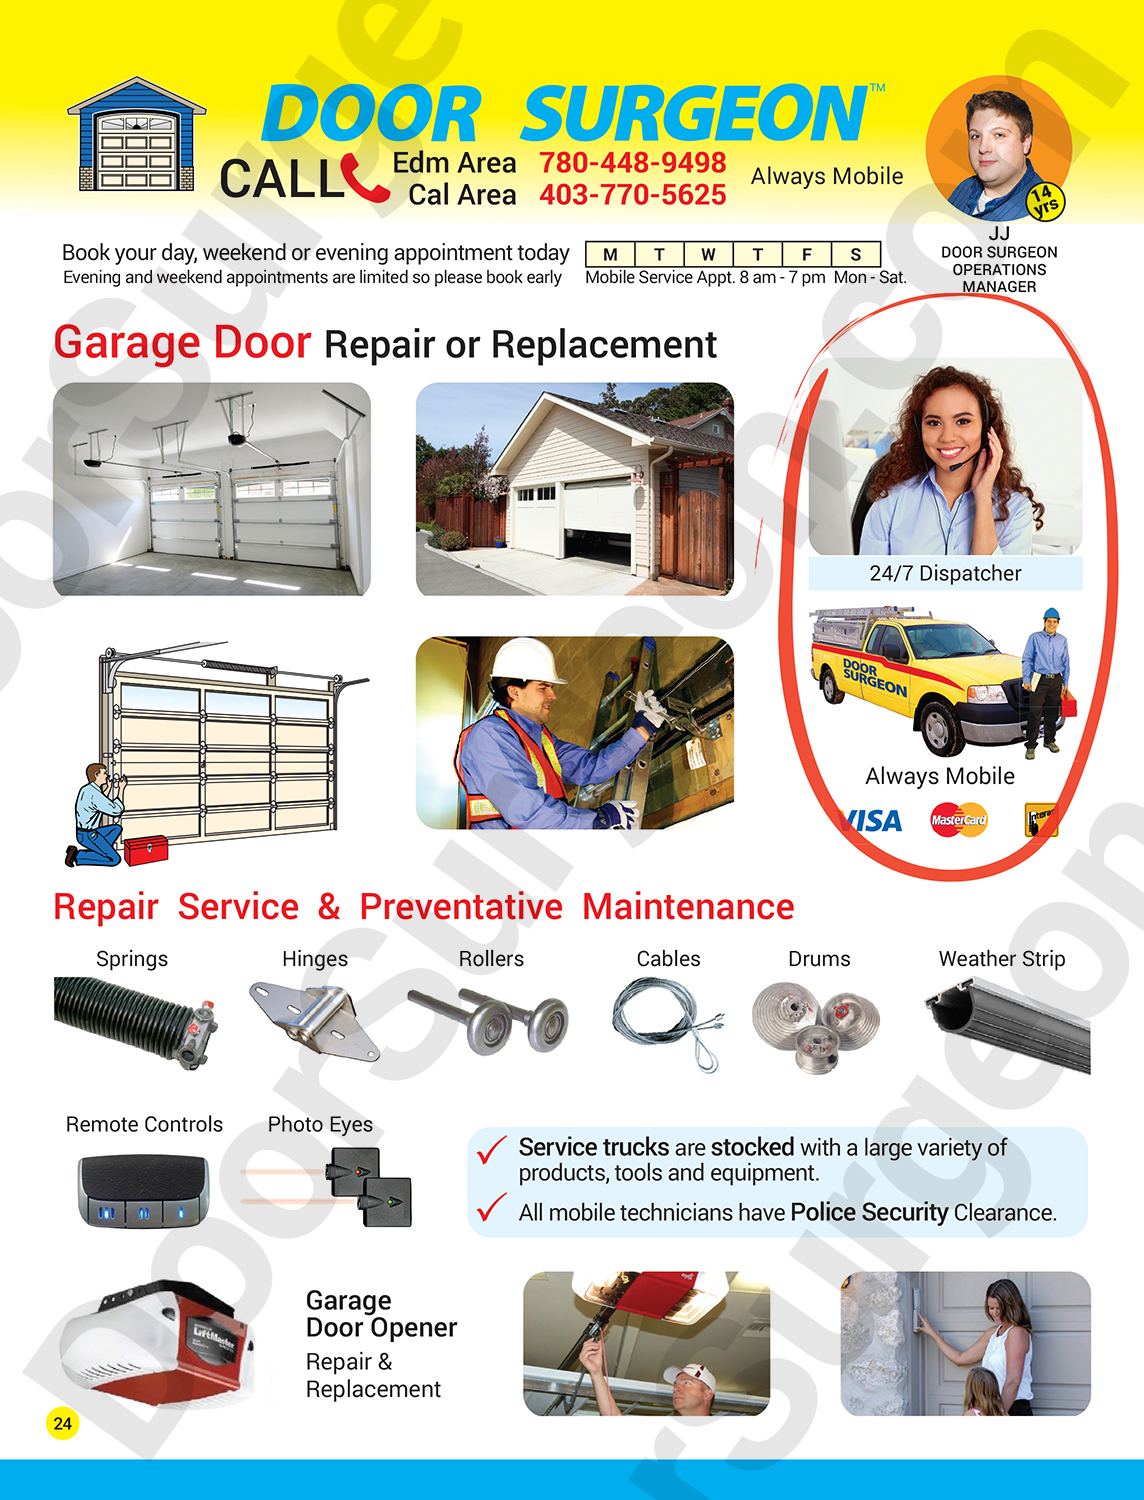 Garage door repair or replacement service and preventative maintenance for garage door parts.